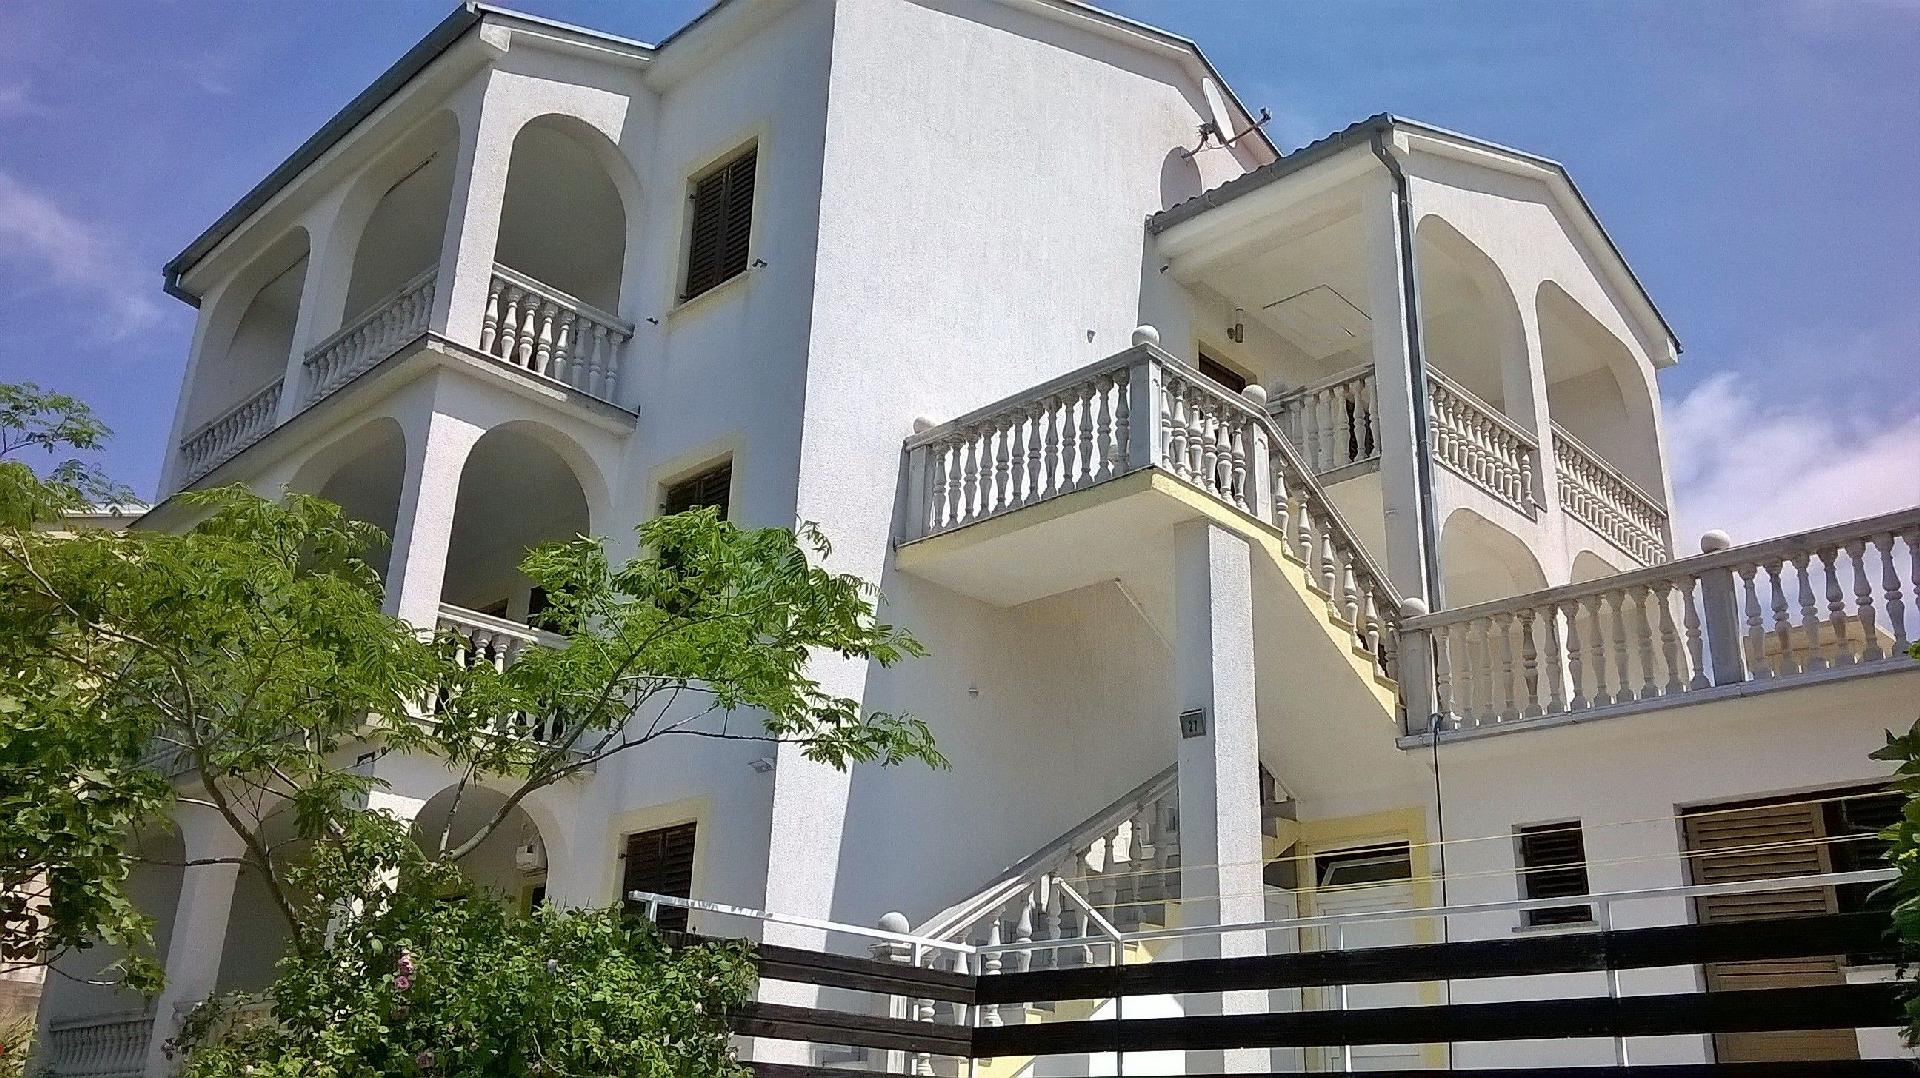 Tolle Wohnung in Novi Vinodolski und Panoramablick Ferienhaus in Kroatien